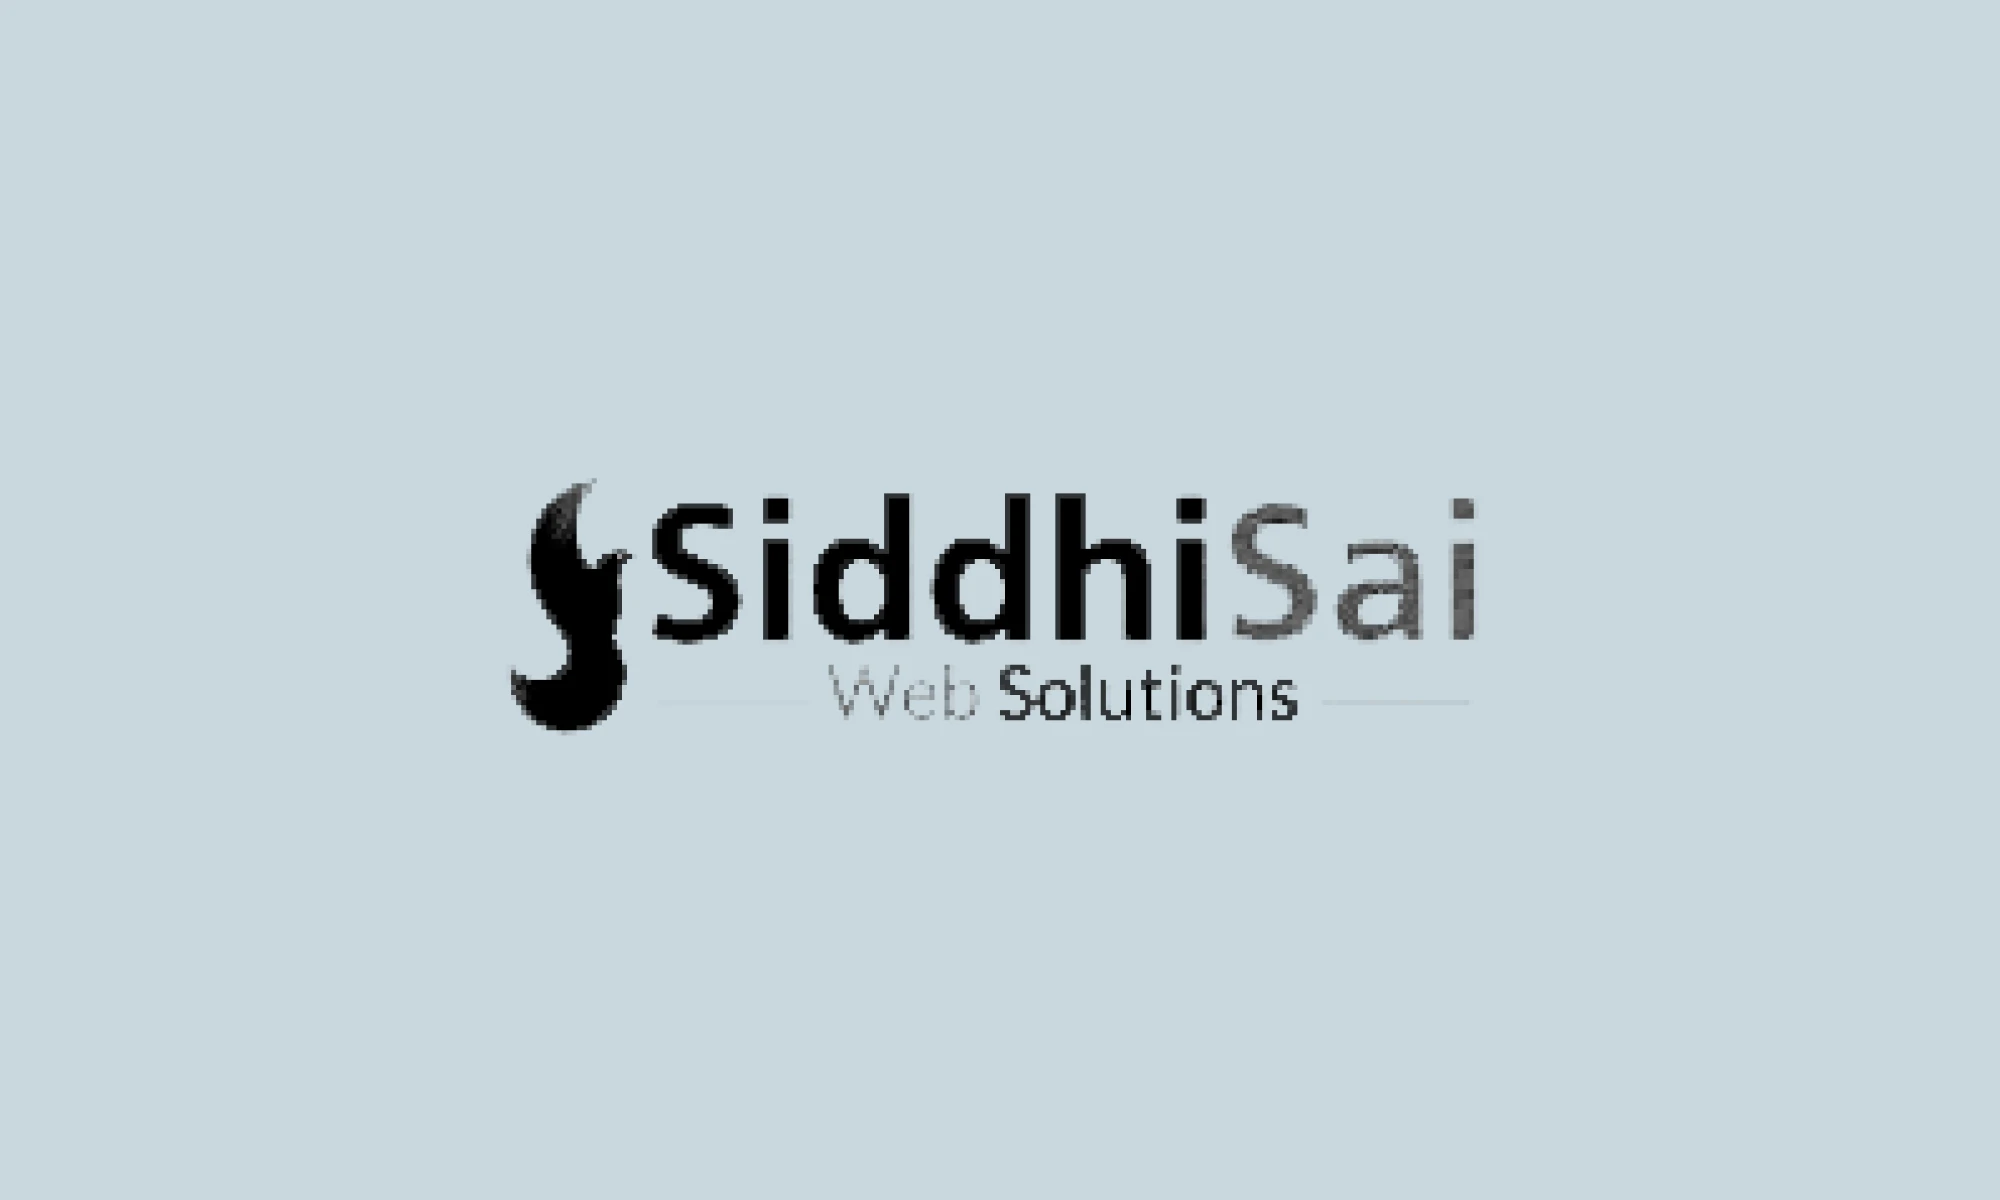 Cómo TestGorilla redujo el tiempo de contratación para SiddhiSai Web Solutions